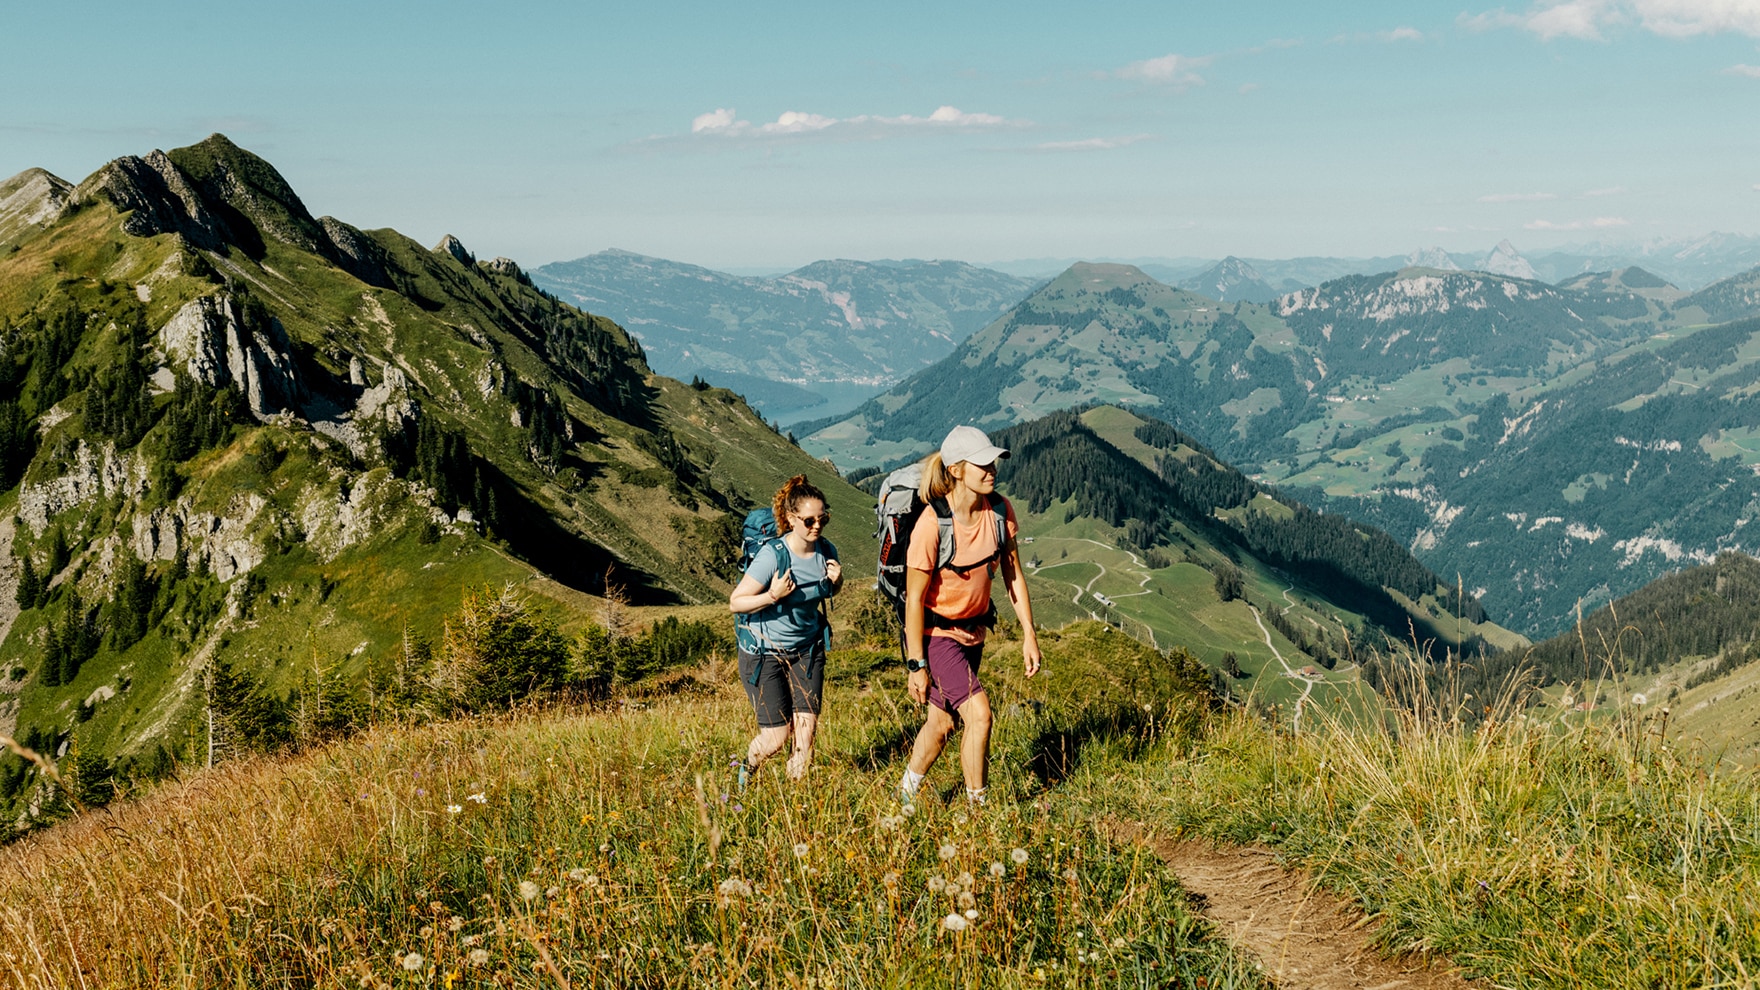 7126 Höhenmeter führt der Tell-Trail hinauf in die archaische Bergwelt der Zentralschweiz.